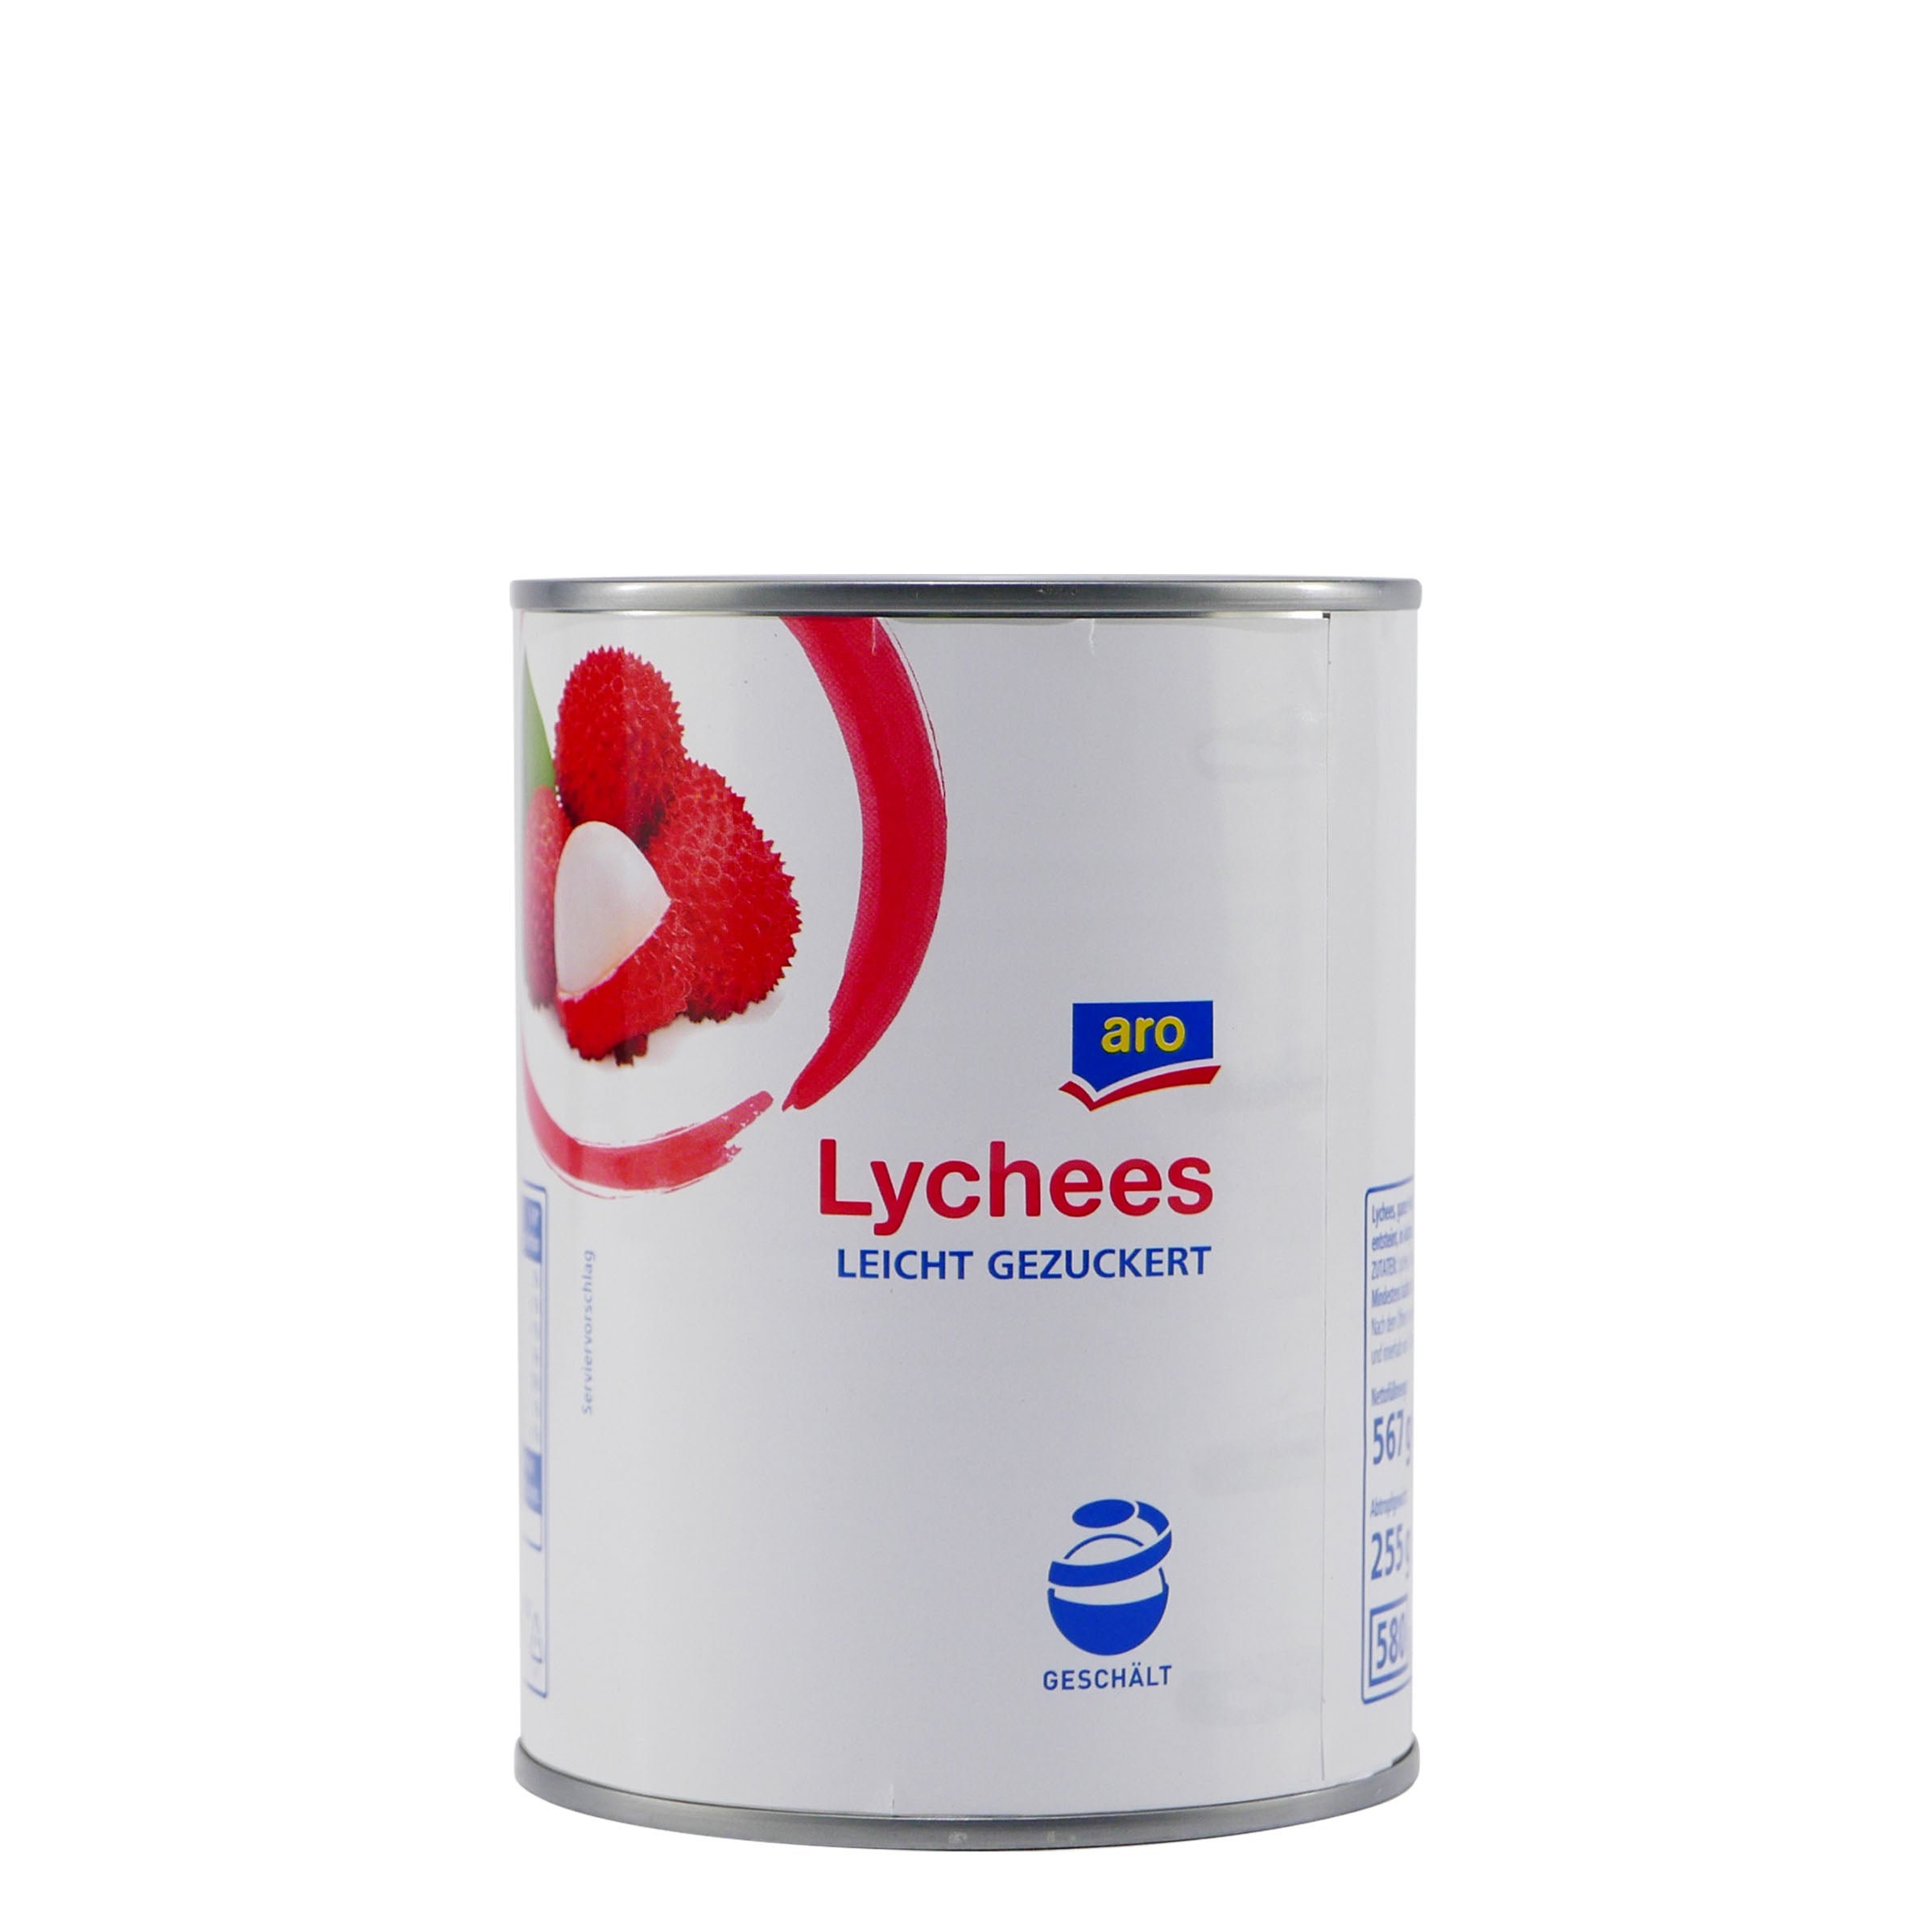 aro Lychees (12 x 567g)